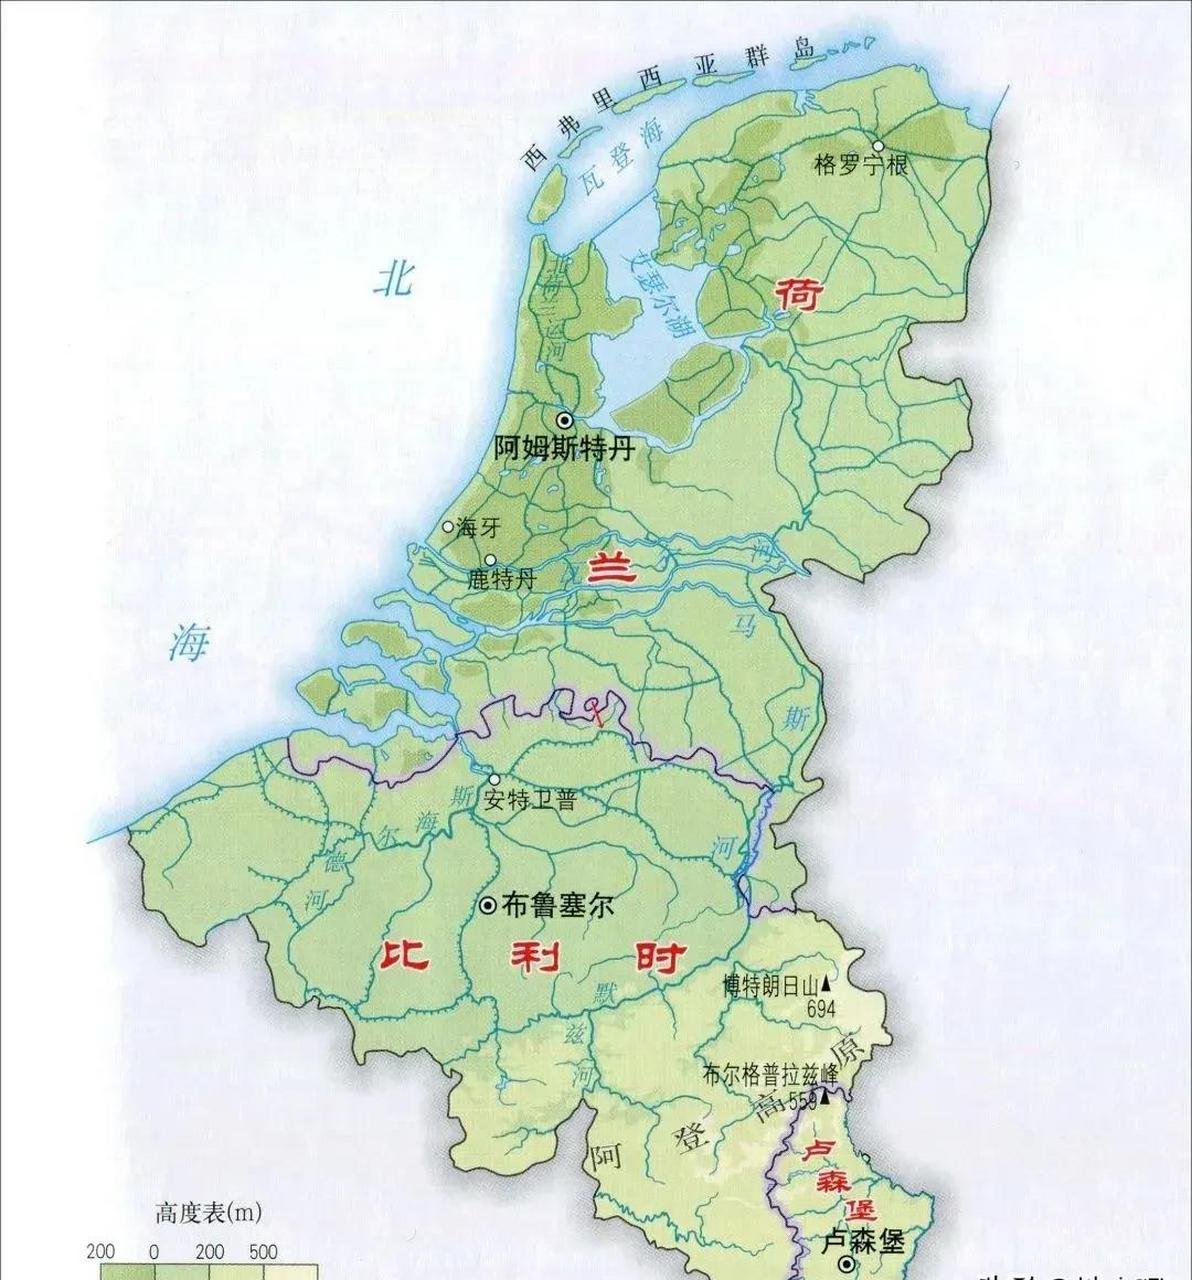 低地三国,位于莱茵河三角洲,海拔极低,历史上长期属于一个国家,高度